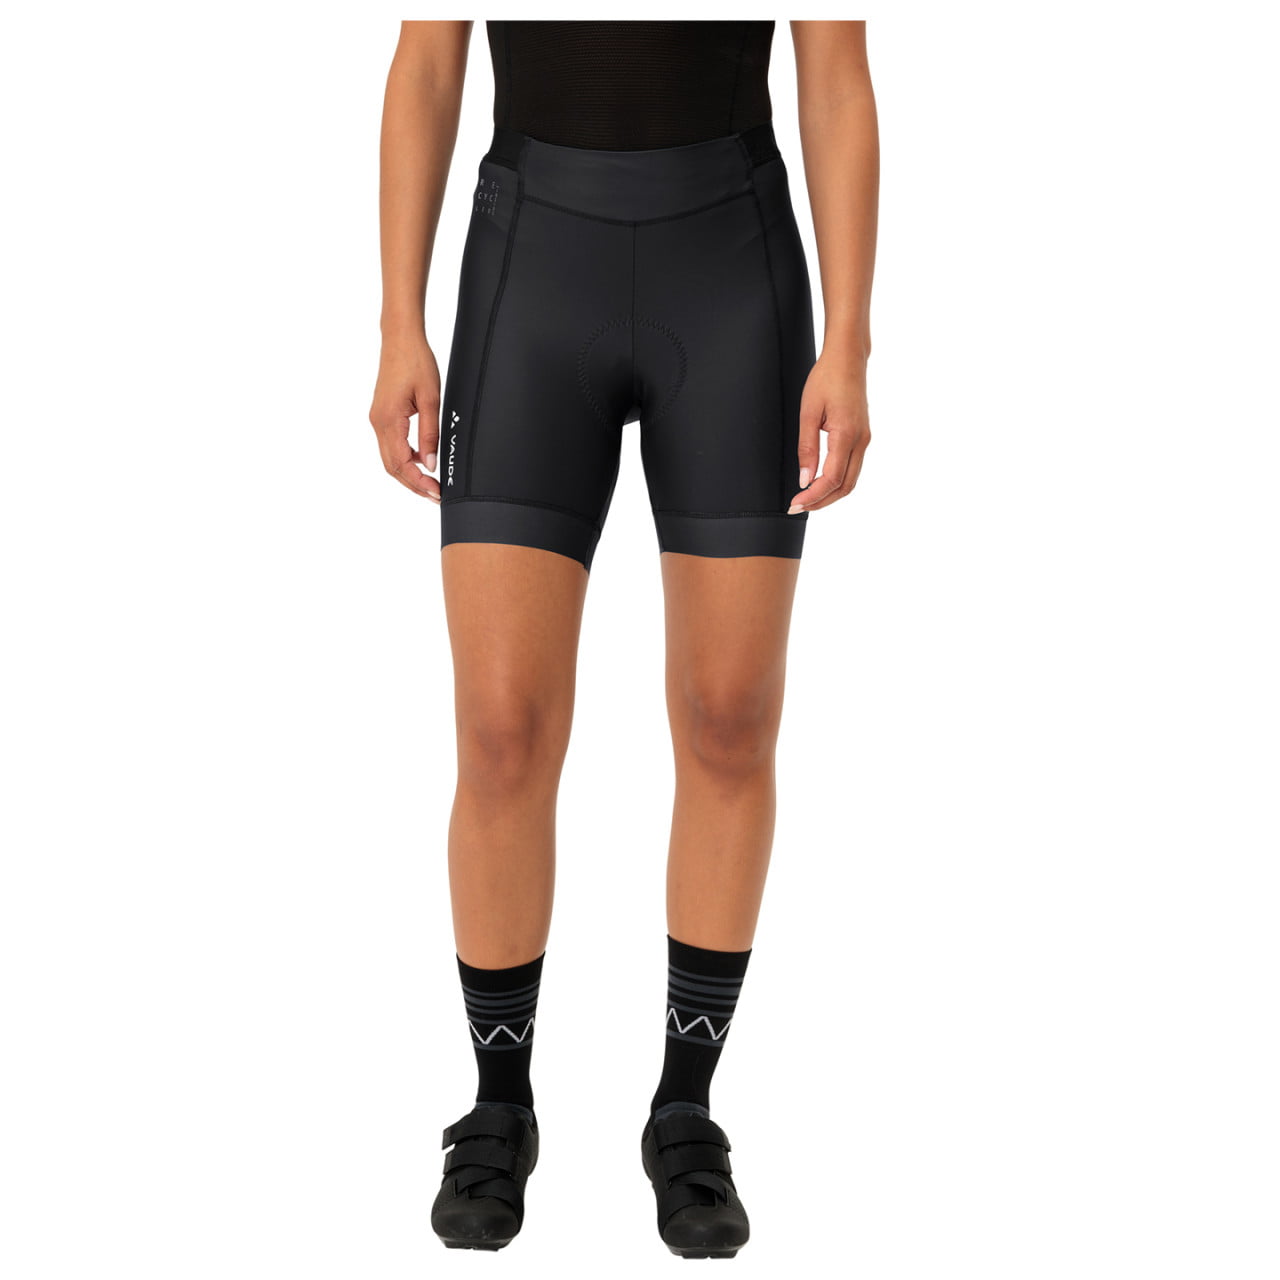 Shorty Women's Cycling Trousers